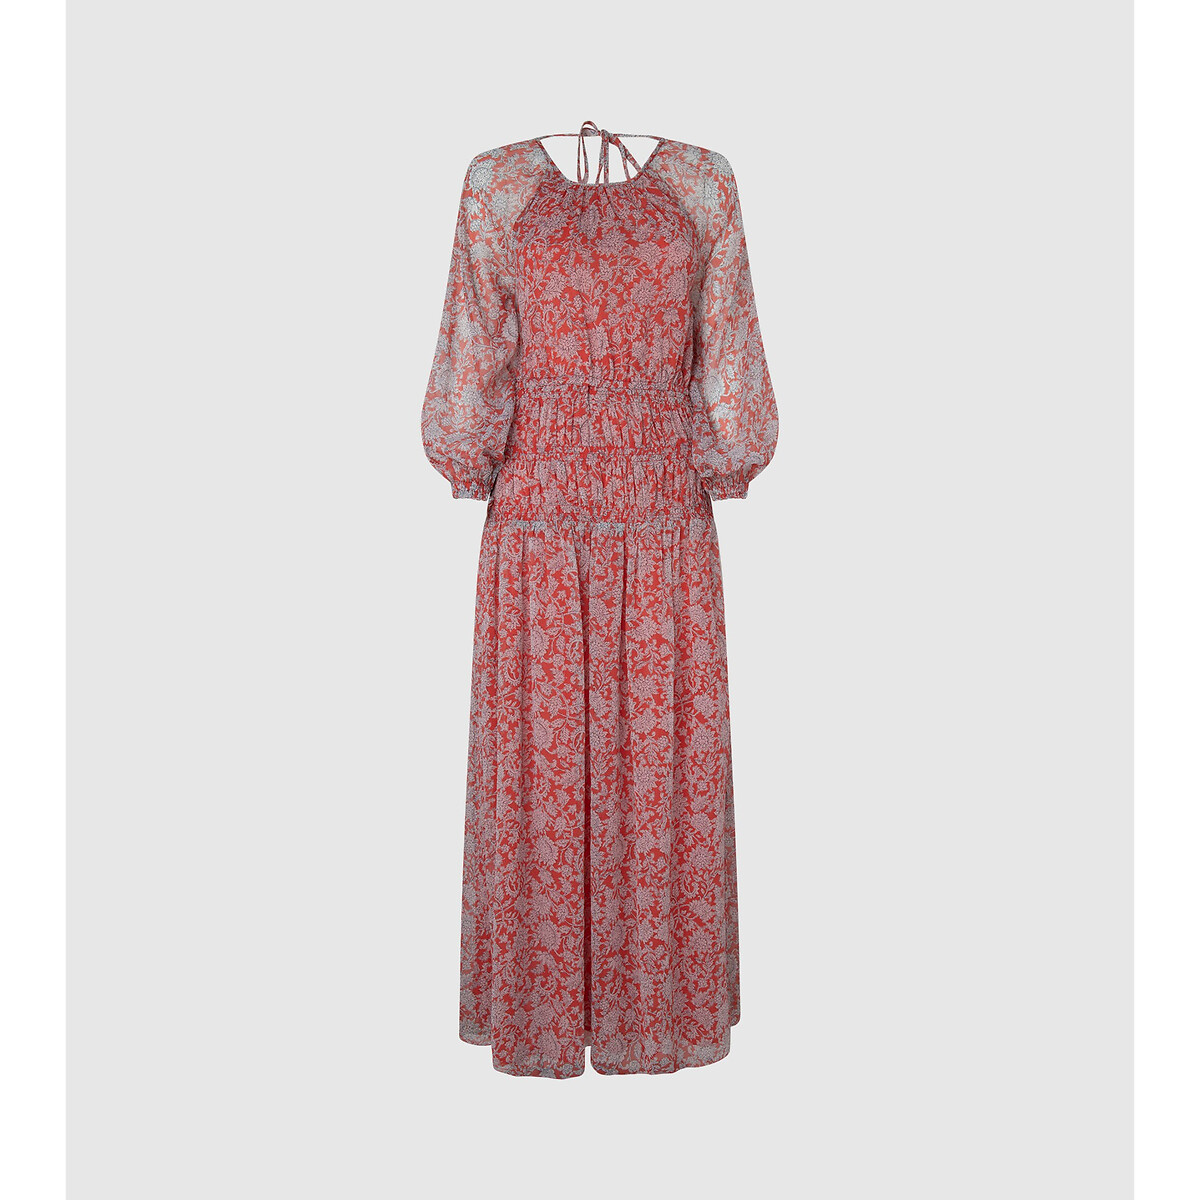 Платье Длинное с принтом и открытой спинкой XL красный LaRedoute, размер XL - фото 5